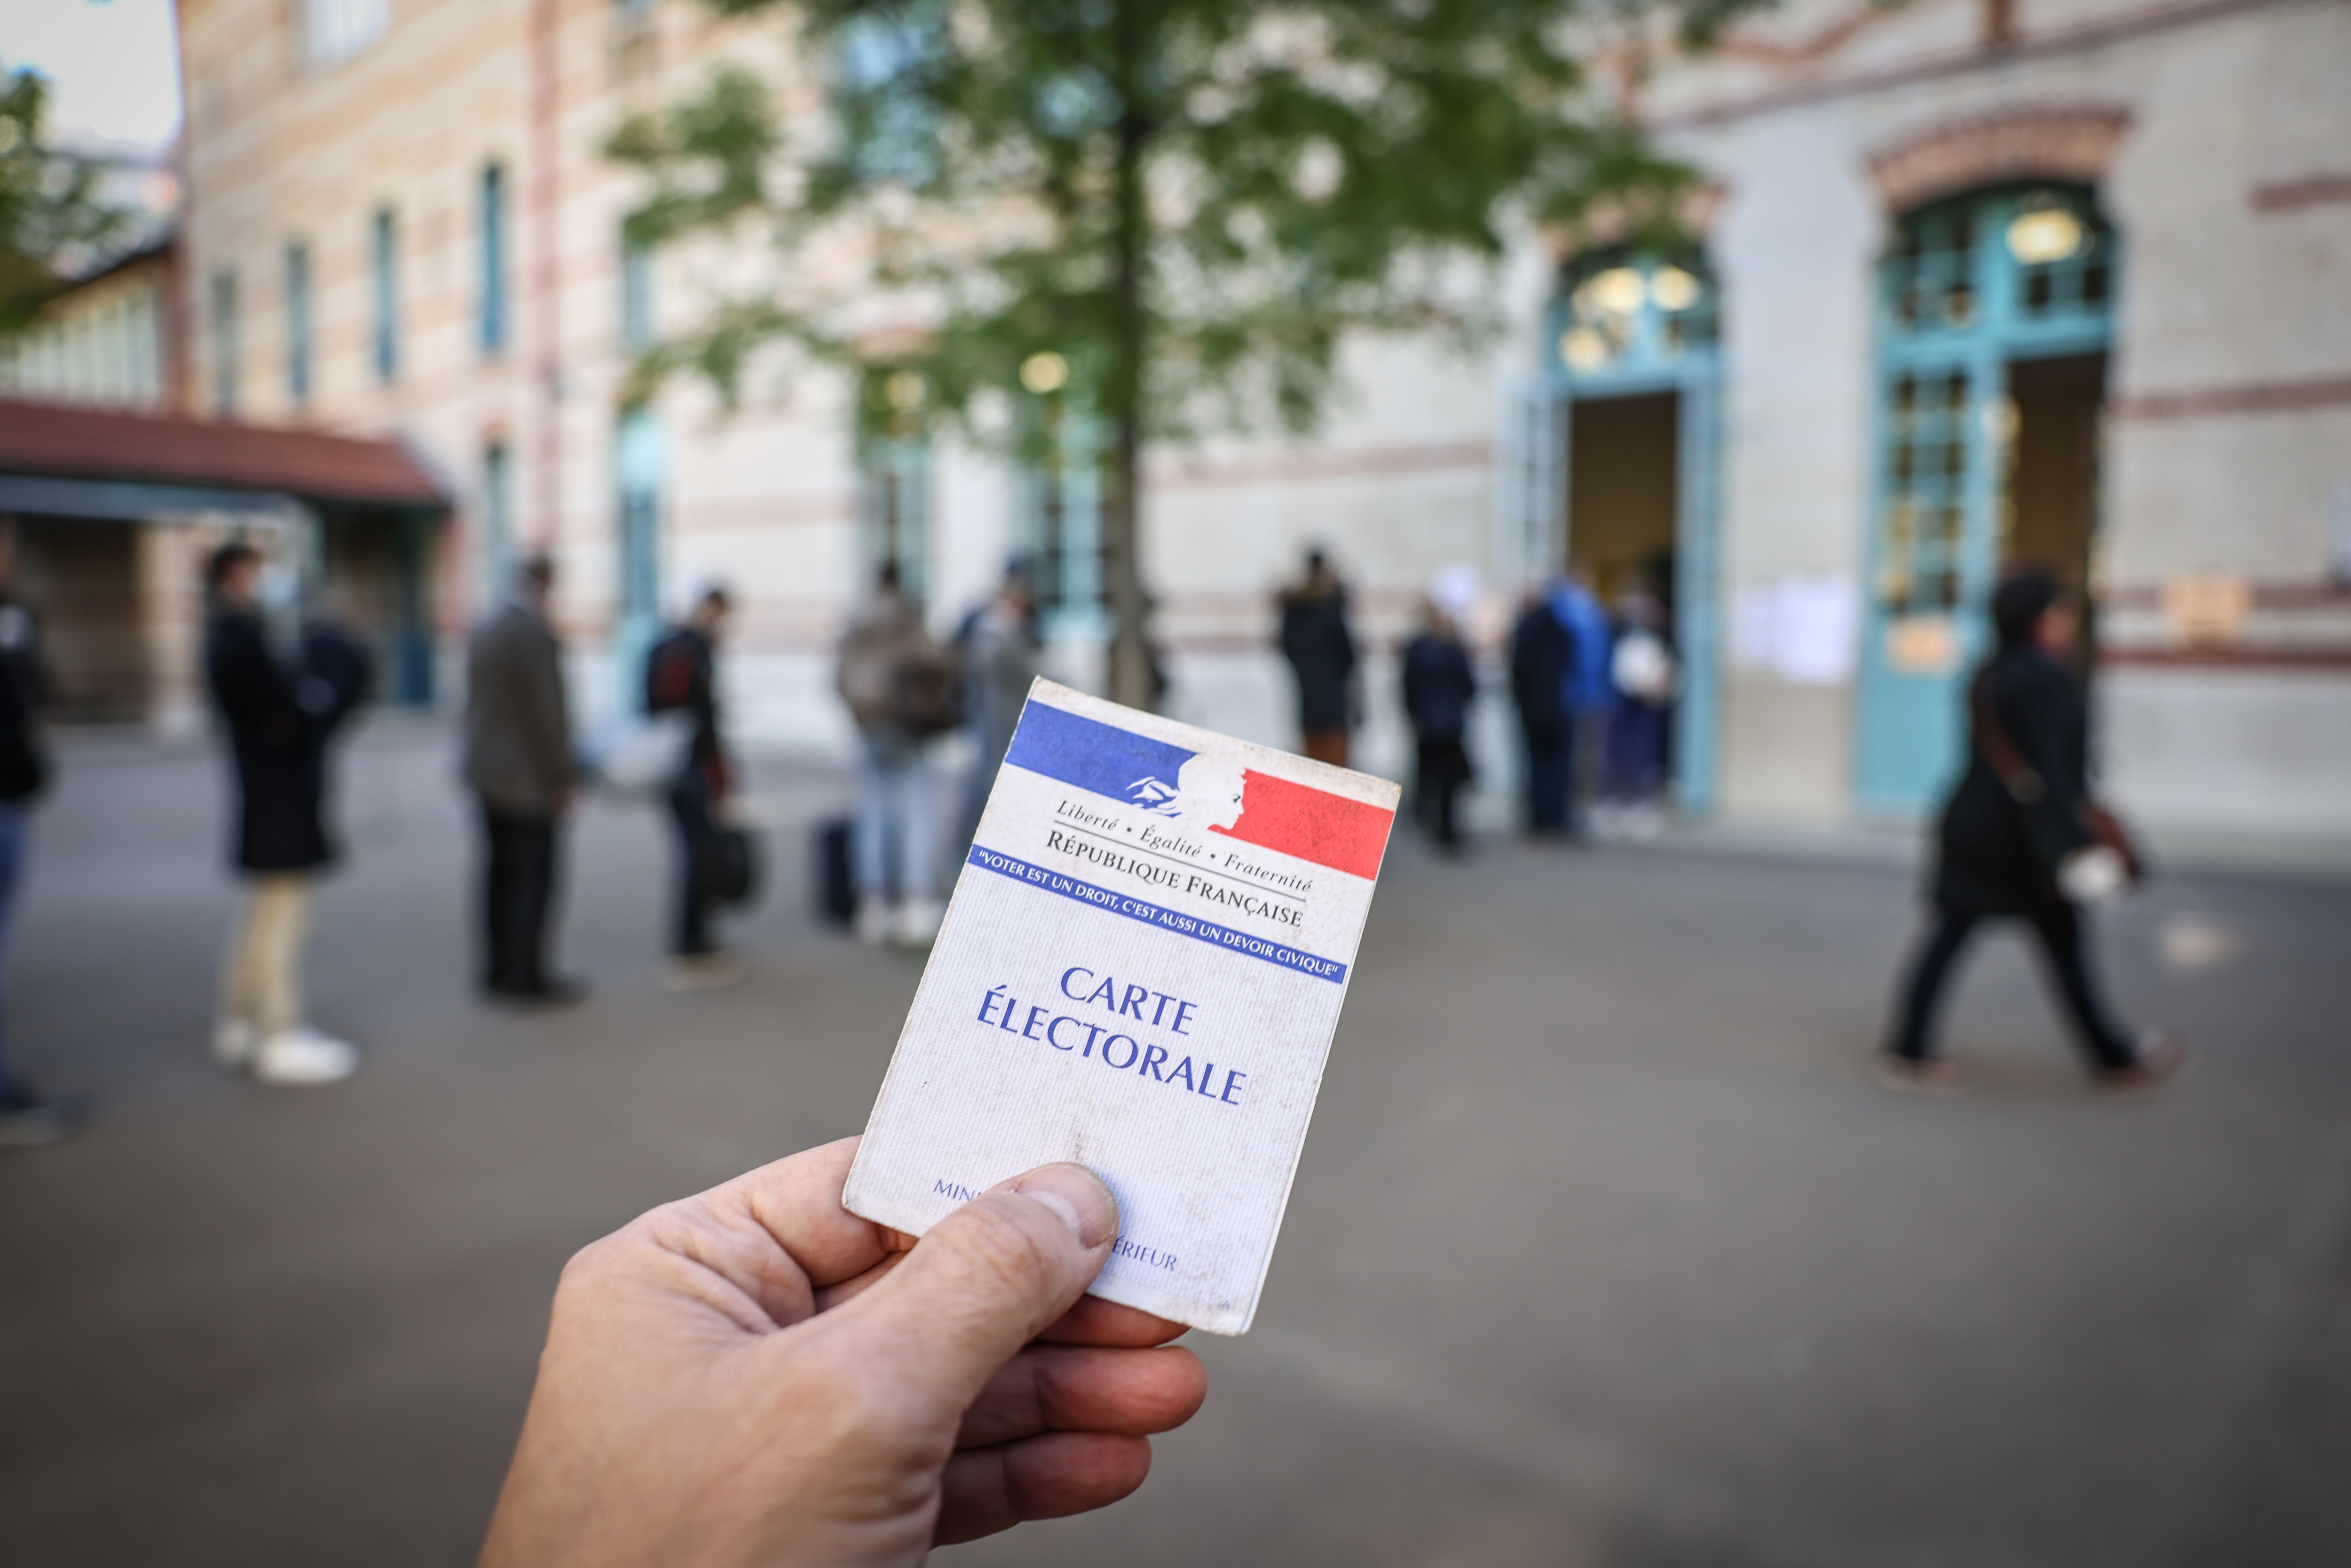 Politique
Paris XVe, le 10 avril 2022
Premier tour de l'élection présidentielle
Illustration d'un bureau de vote
Photo LP / Fred Dugit
